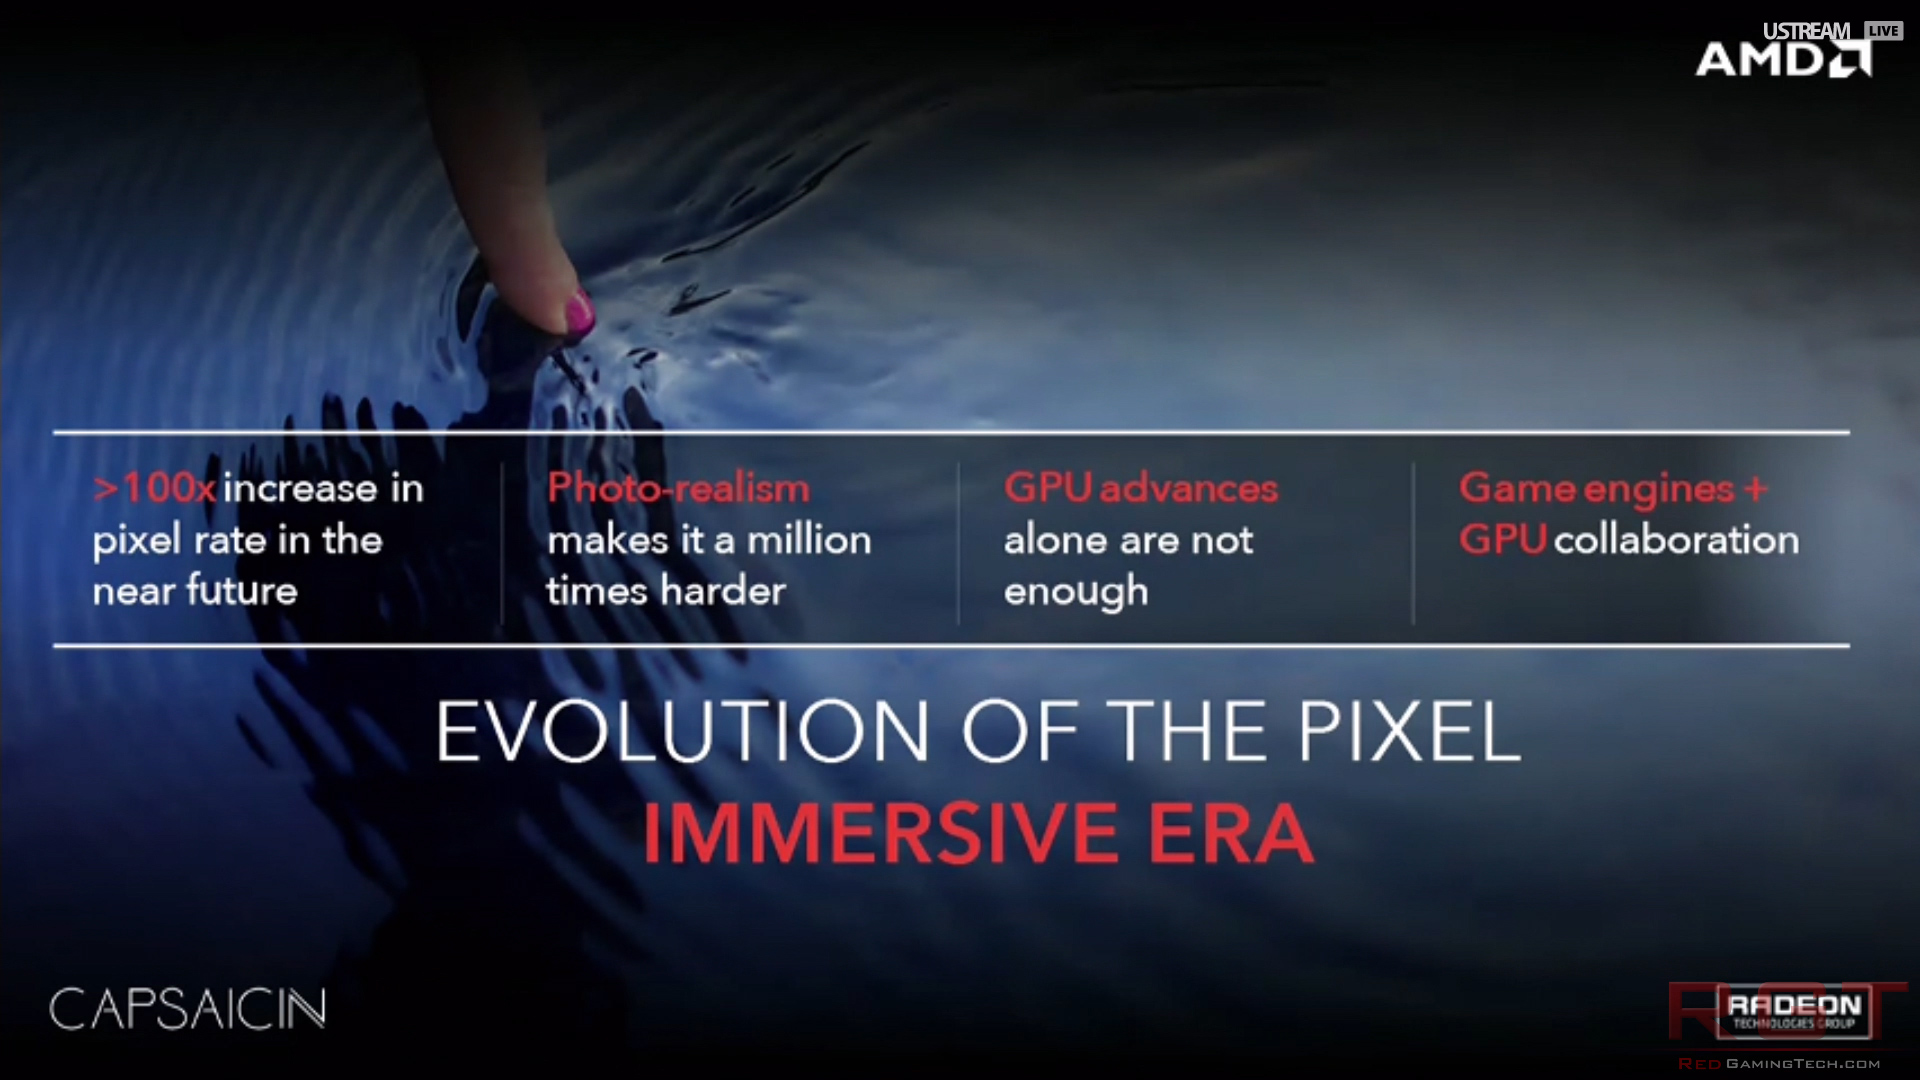 AMD-Capsaicin-immersive-era